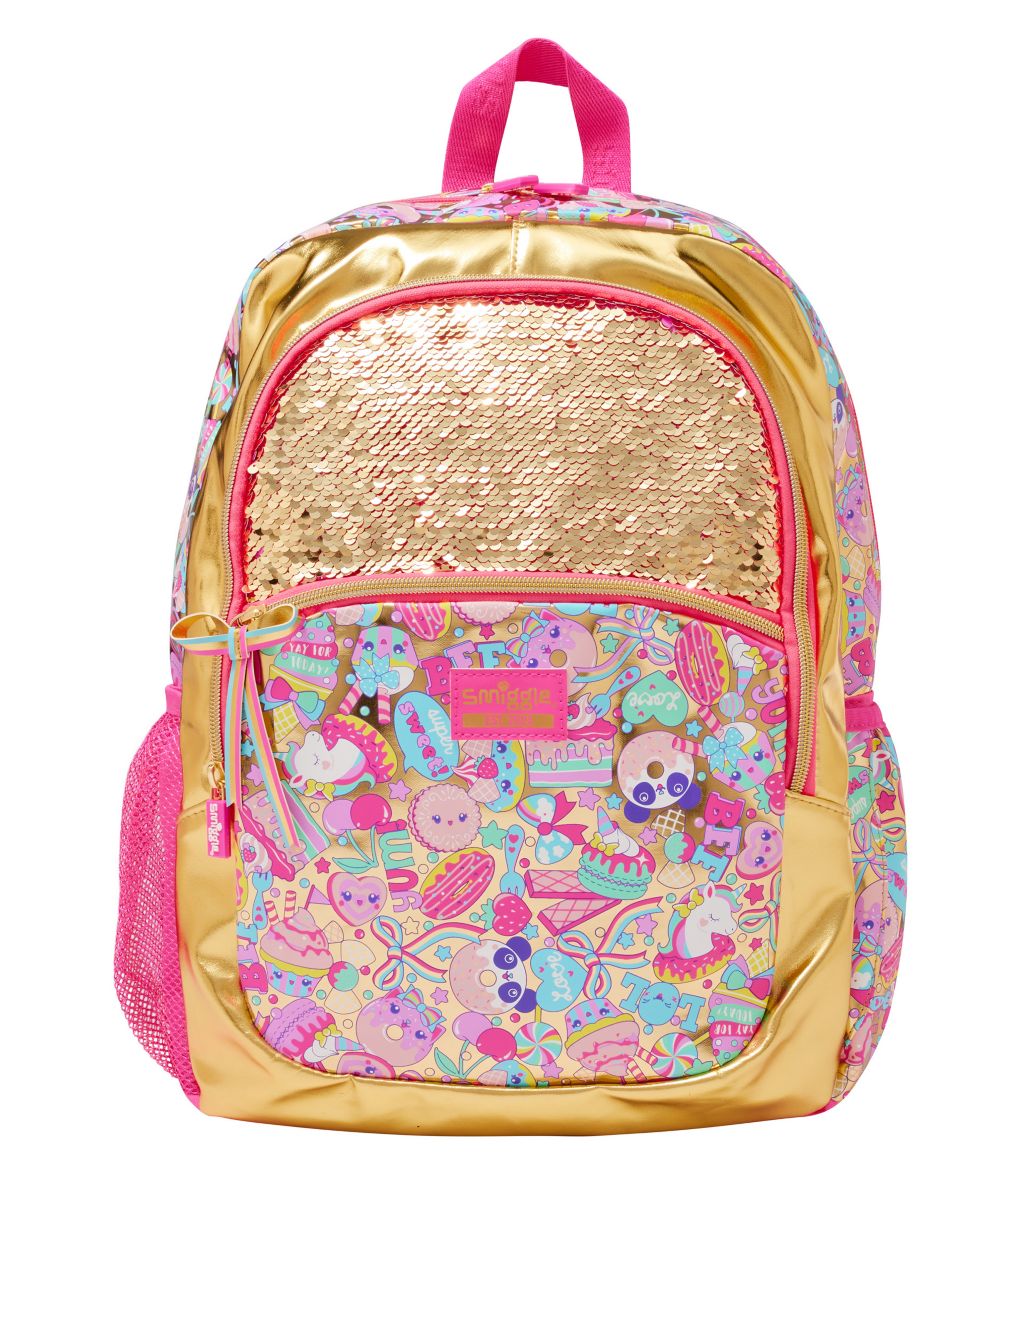 Kids' Patterned Backpack image 1